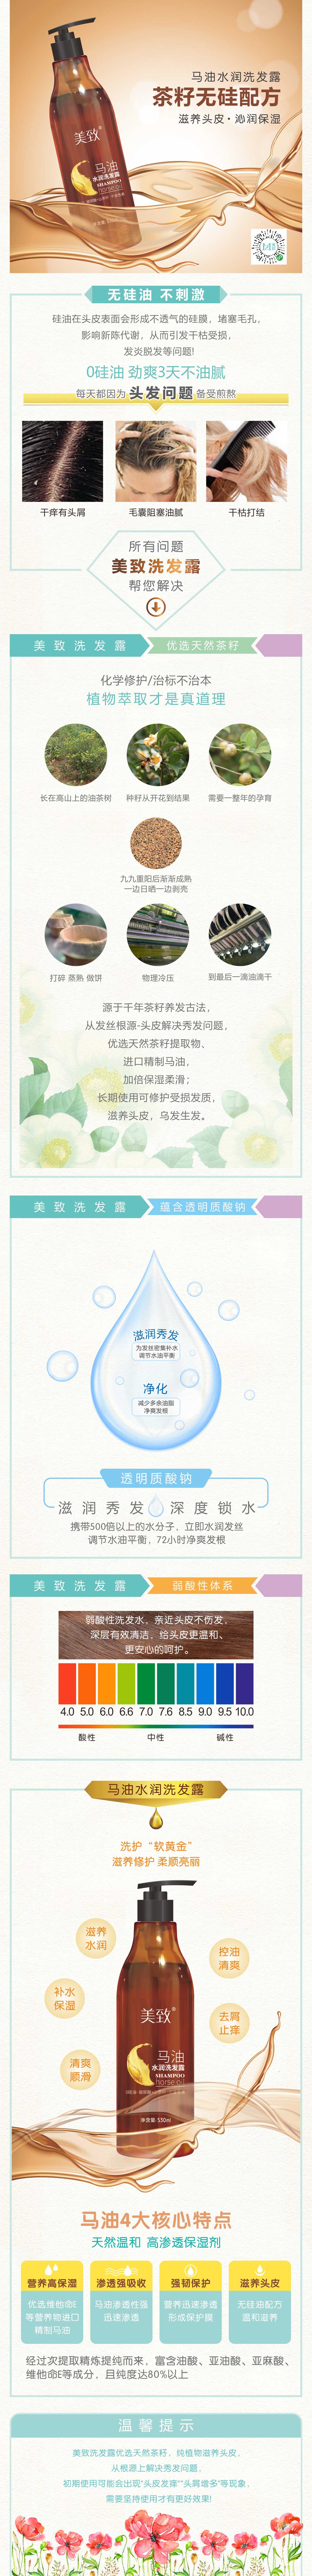 专业洗发水推荐_香港洗发水批发相关-厦门植护坊生物技术有限公司